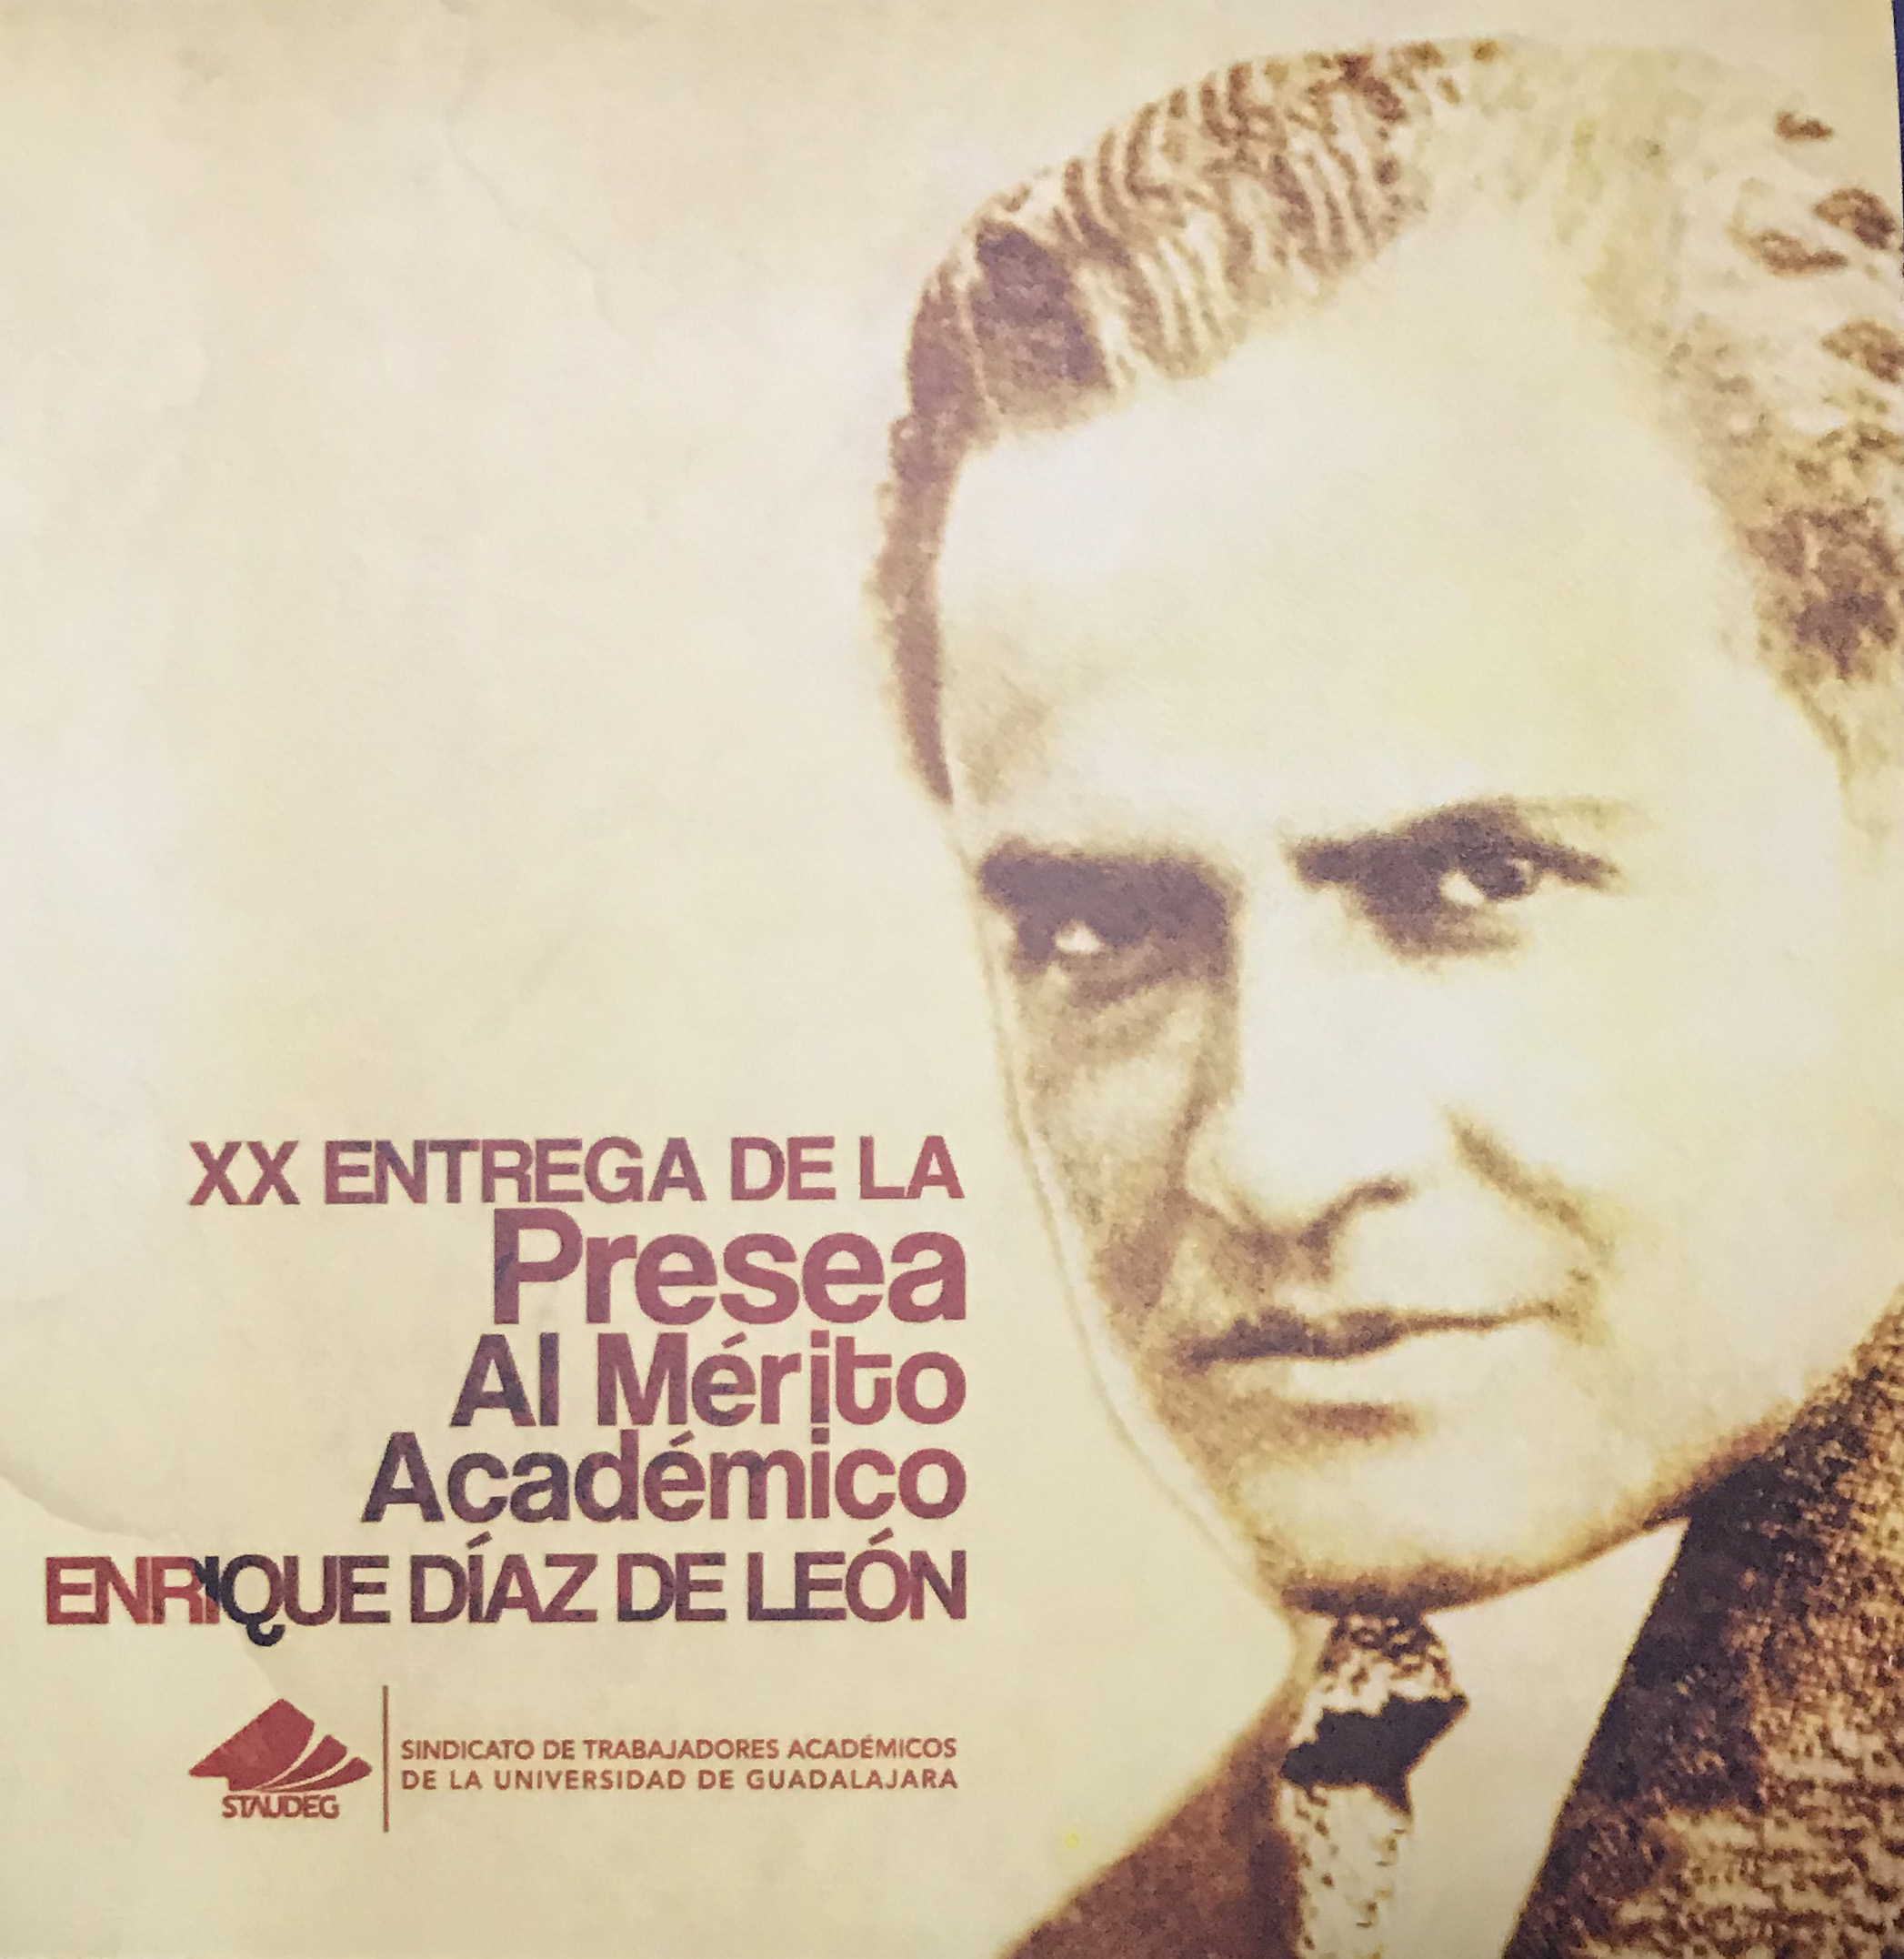 Cartel promocional de la XX Entrega de la Presea al Mérito Académico